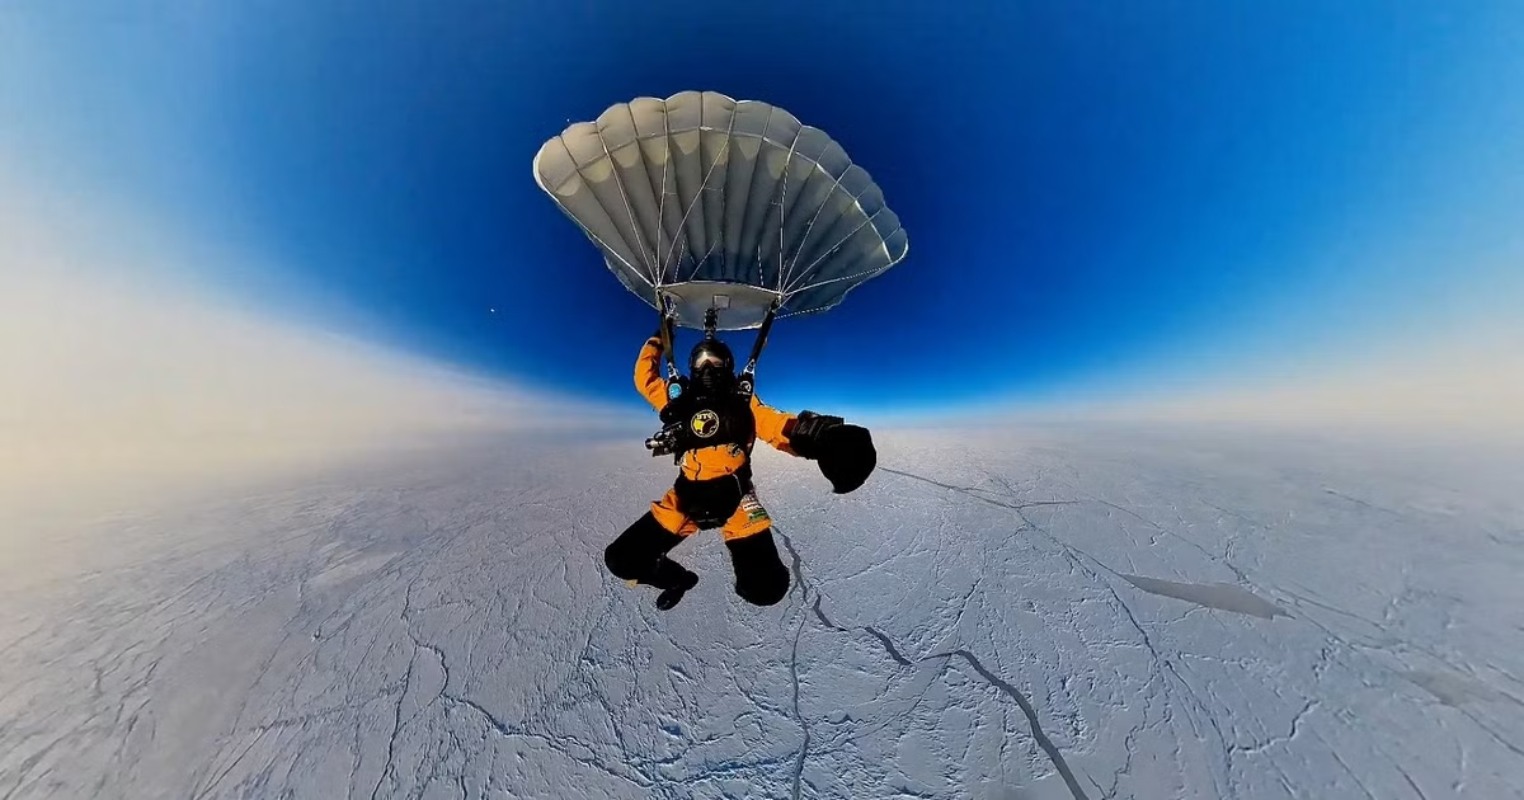 World Record: 3 रूसी नागरिकों ने ‘उत्तरी ध्रुव’ तक लगाई छलांग, बना डाला वर्ल्ड
रिकॉर्ड